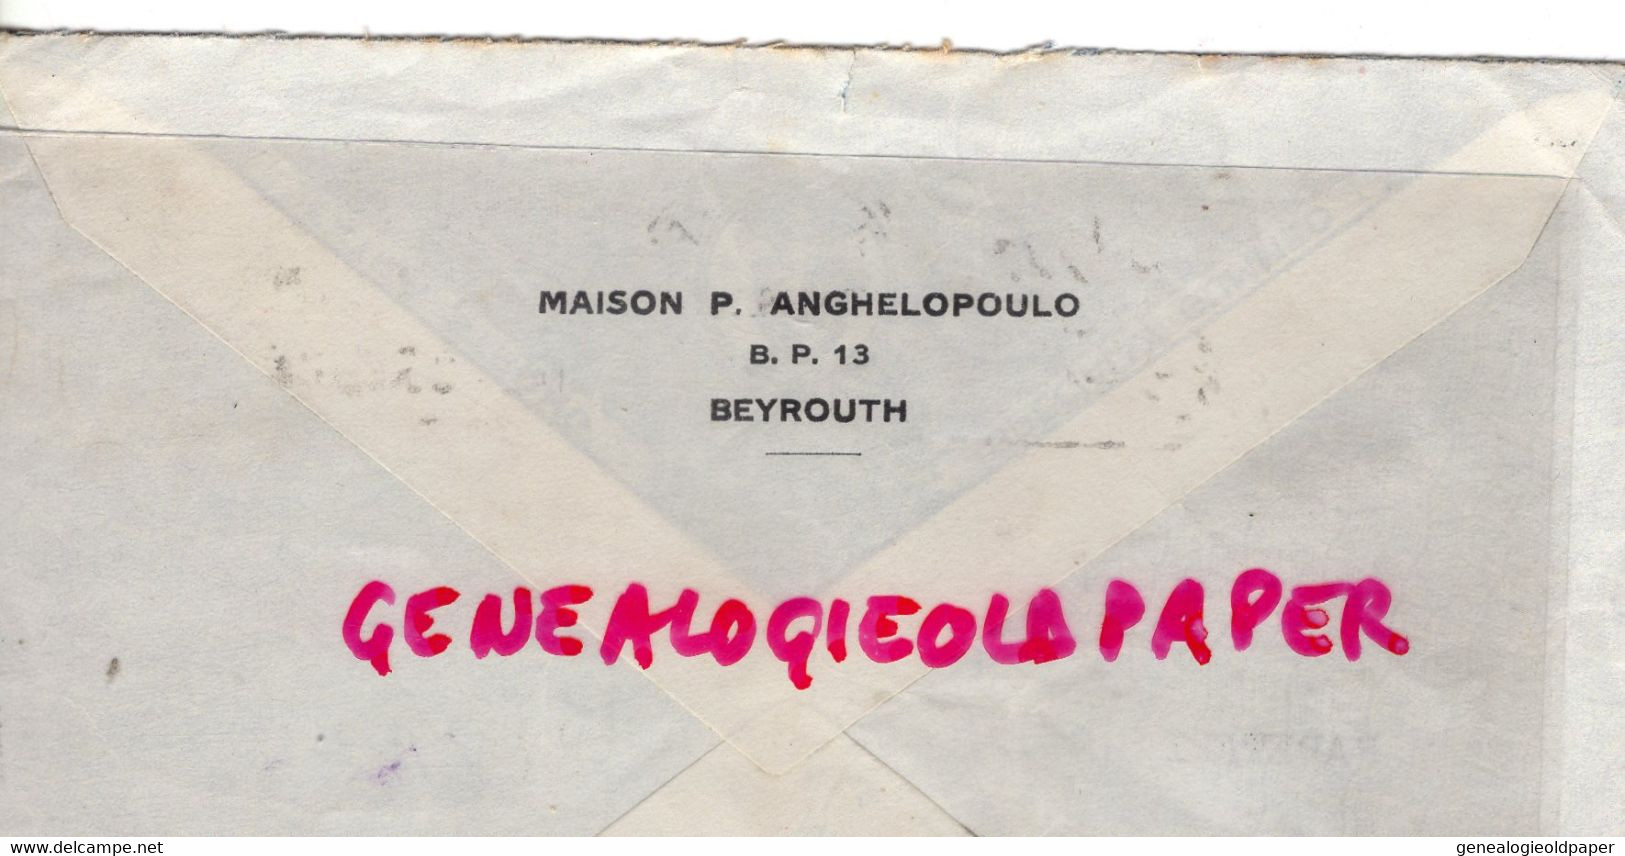 LIBAN- LETTRE MAISON P. ANGHELOPOULO - BEYROUTH- A PAPETERIE LUCIEN DESBORDES -BEAUMONT PAR ANGOULEME-1939 - Liban